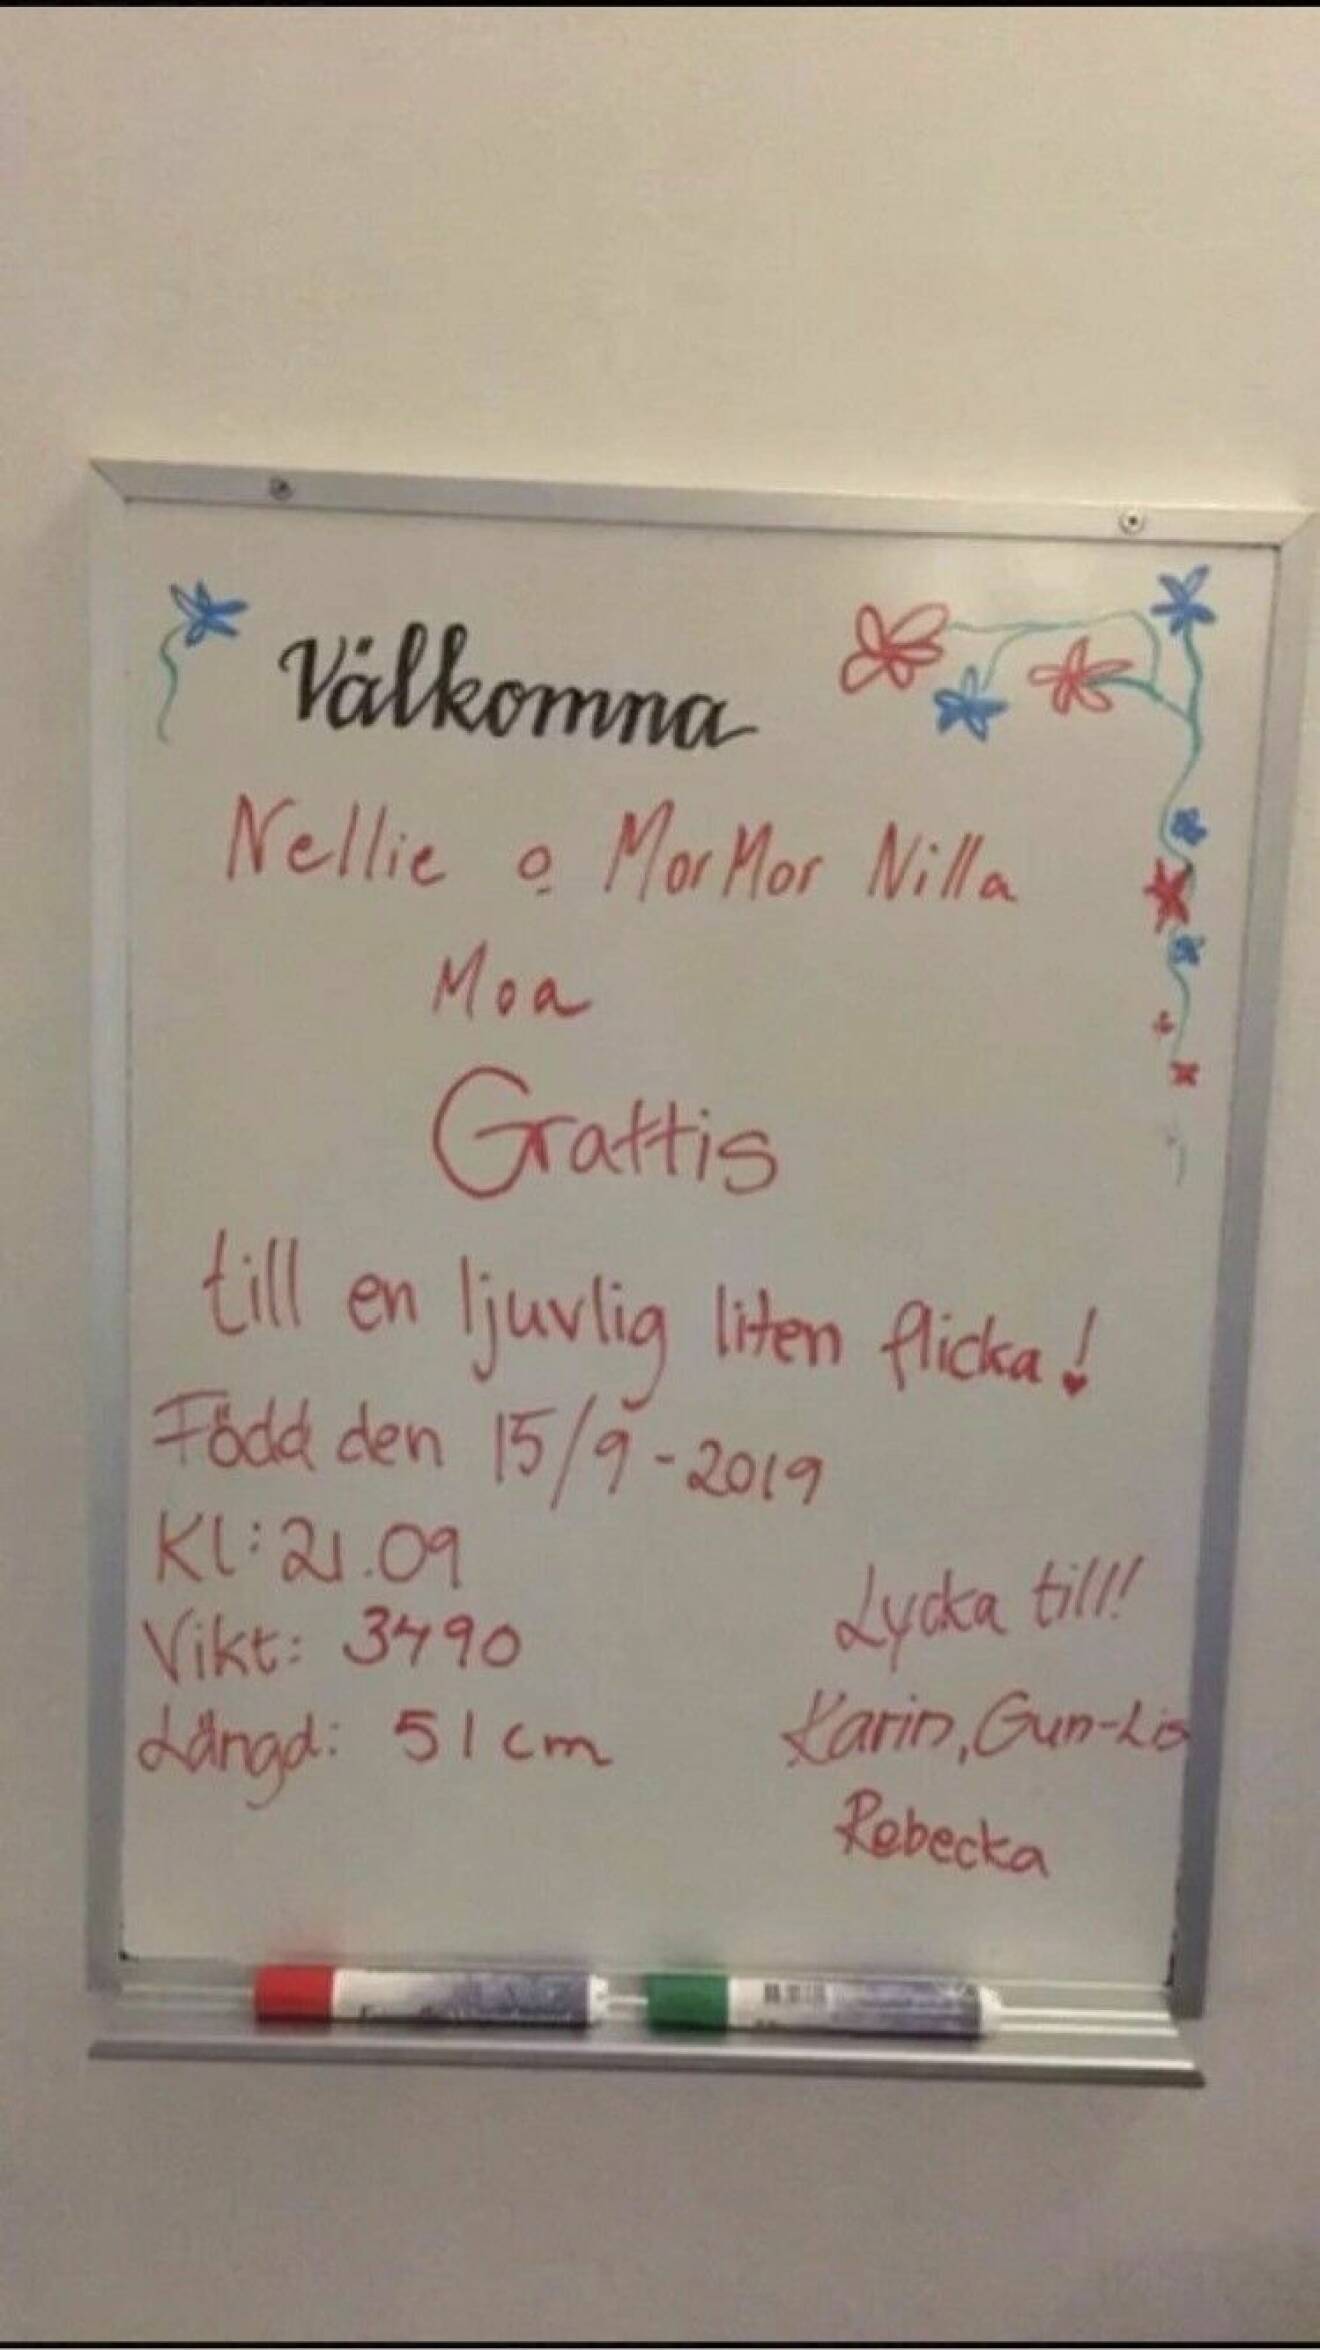 På en whiteboard på BB har personalen skrivit en grattis-hälsning till Nellie, mormor Nilla och kompisen Moa.